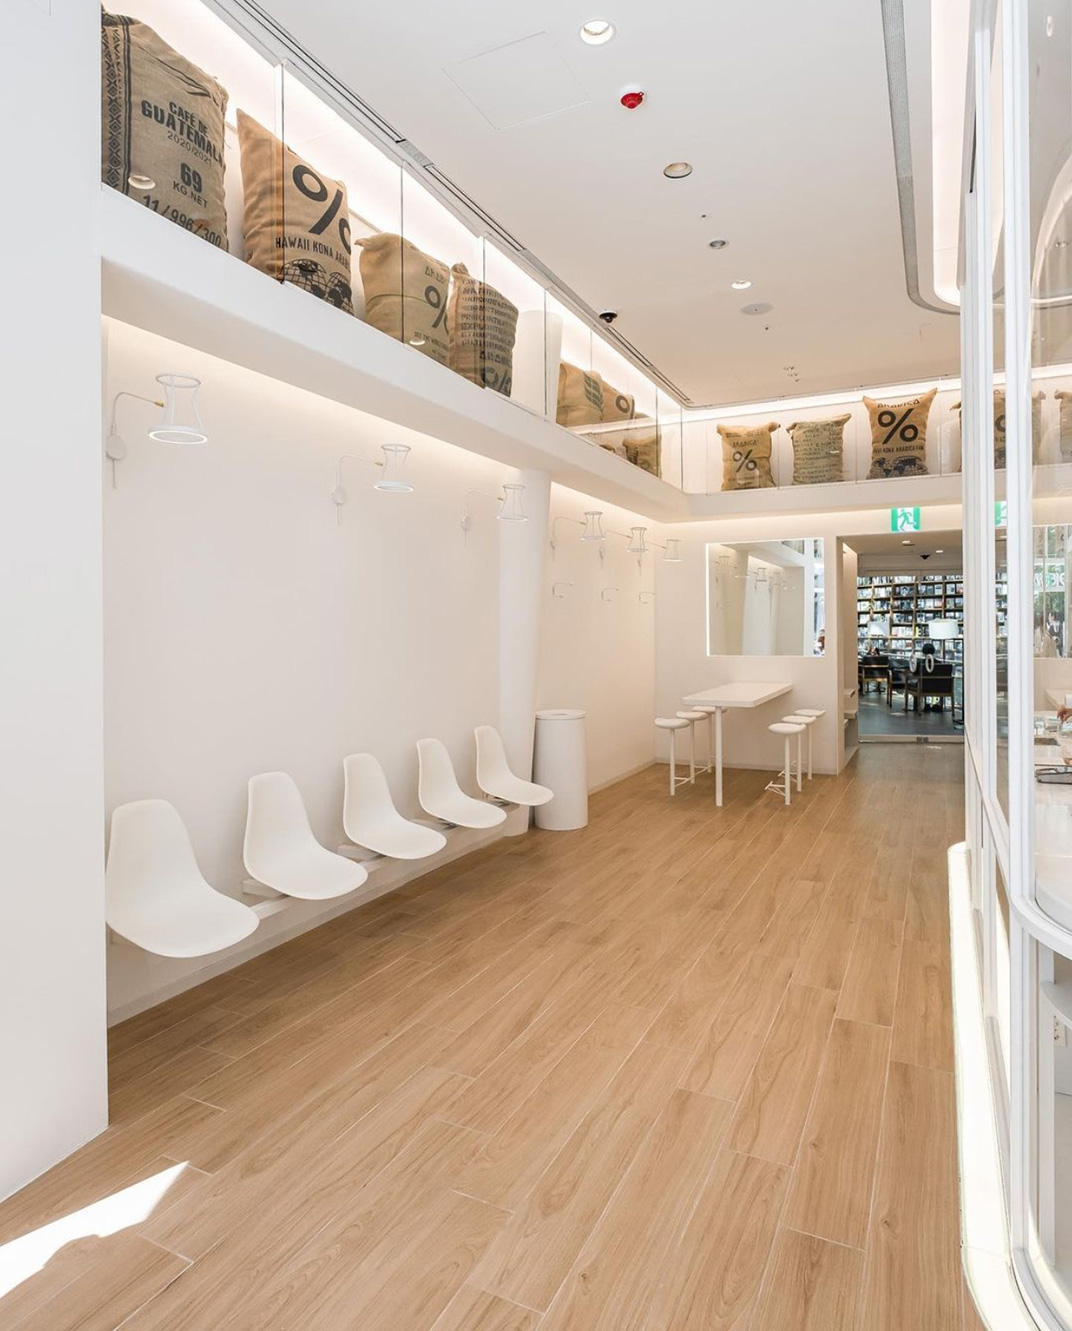 图书馆旁边的咖啡店ARABICA 韩国 成都 首尔 咖啡馆 % ARABICA 白色空间 logo设计 vi设计 空间设计